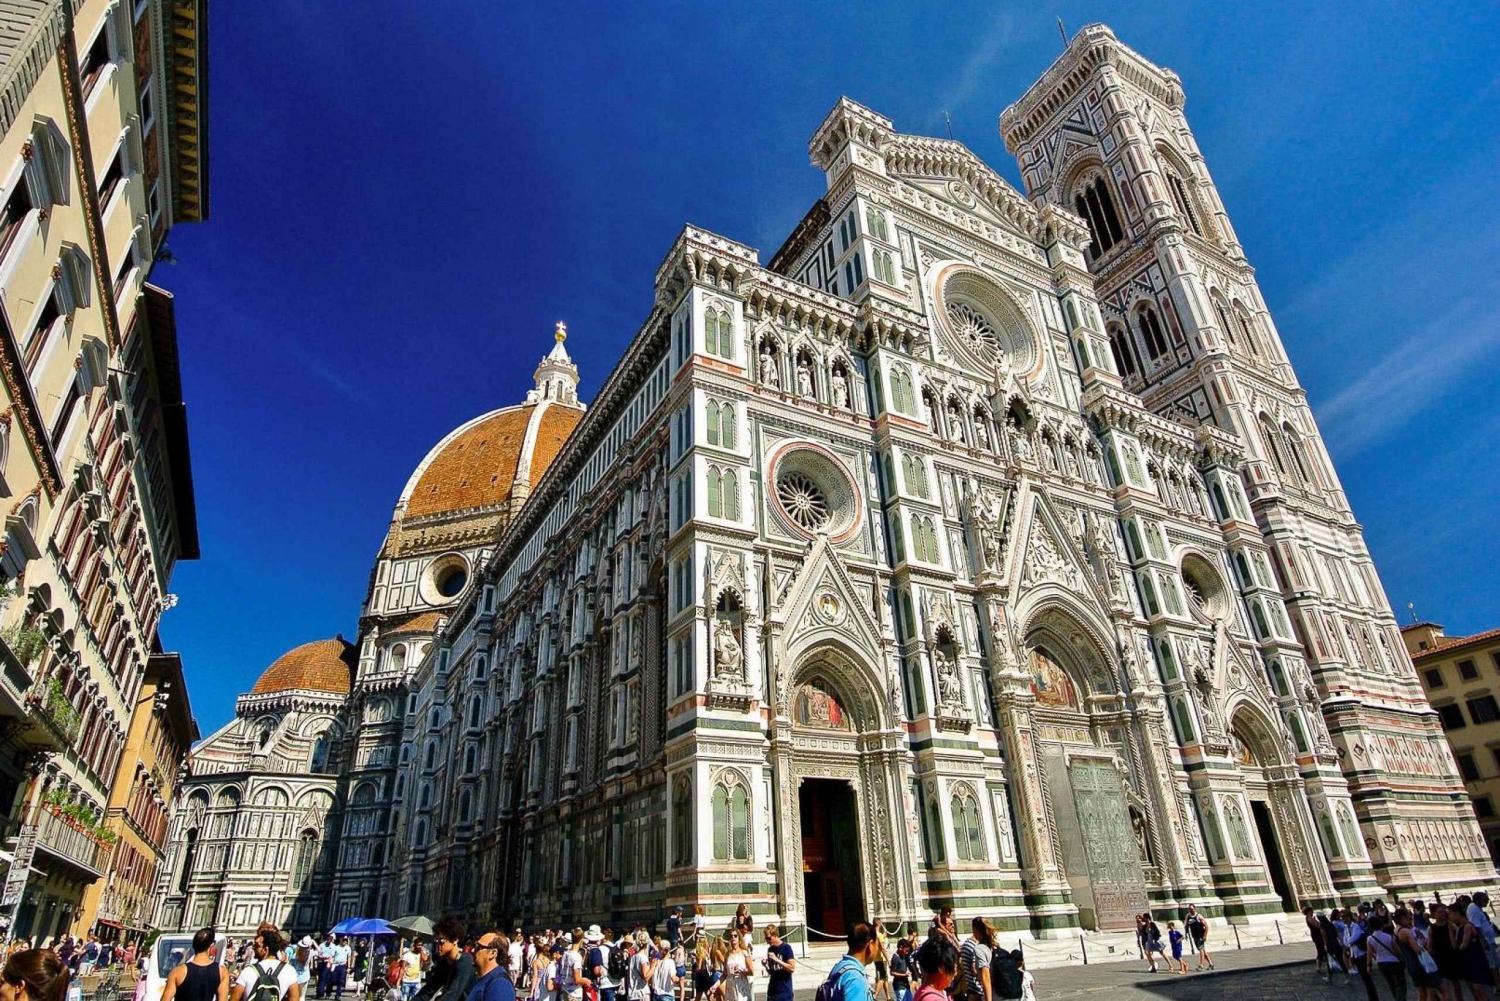 Florencja: Katedra Duomo Santa Maria del Fiore - wycieczka z przewodnikiem